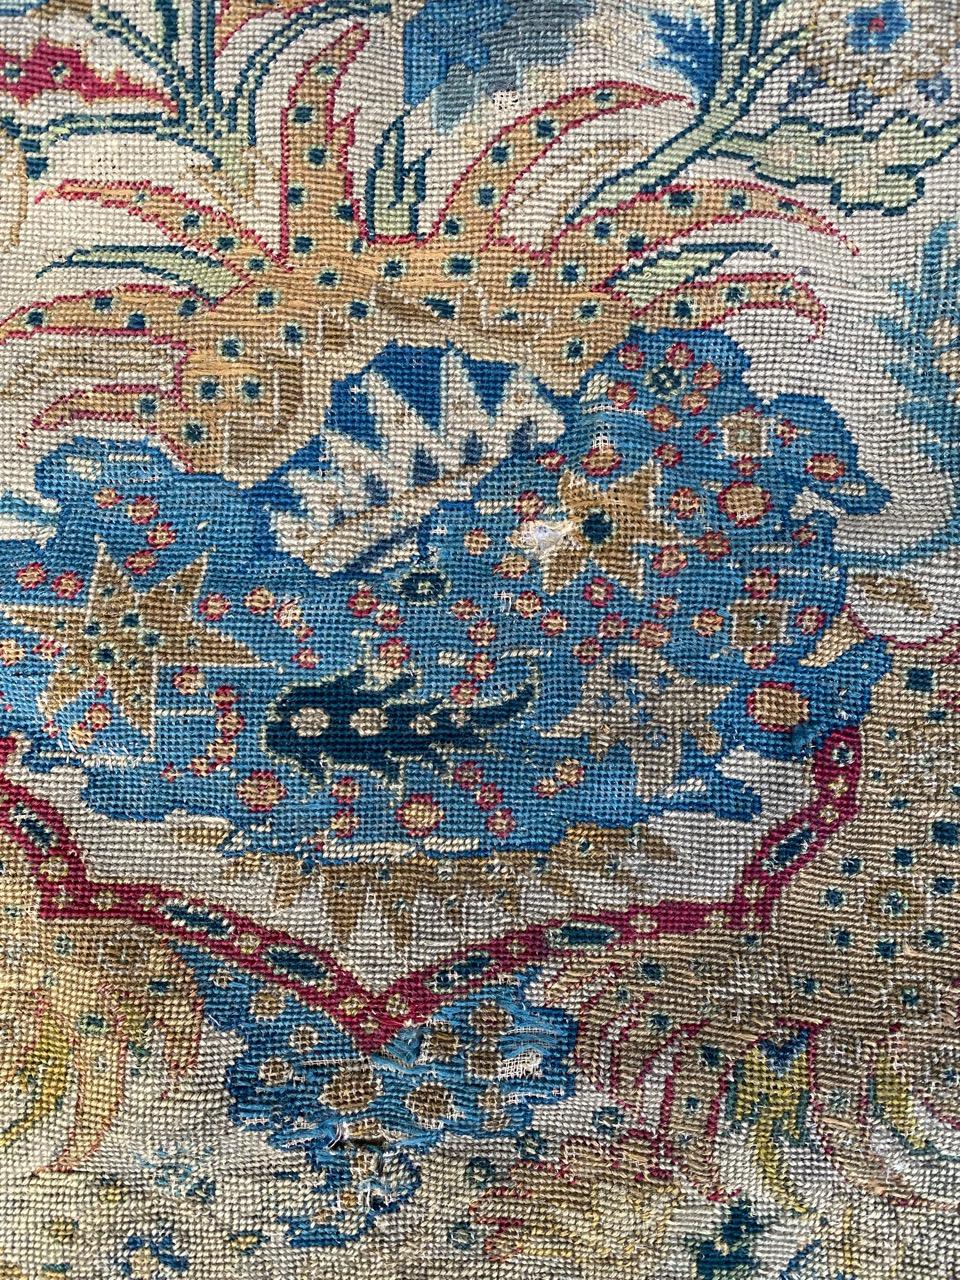 Jolie petite tapisserie à l'aiguille française avec de beaux motifs floraux et de jolies couleurs naturelles, entièrement brodée à la main selon la méthode de la tapisserie à l'aiguille avec de la laine.

✨✨✨
